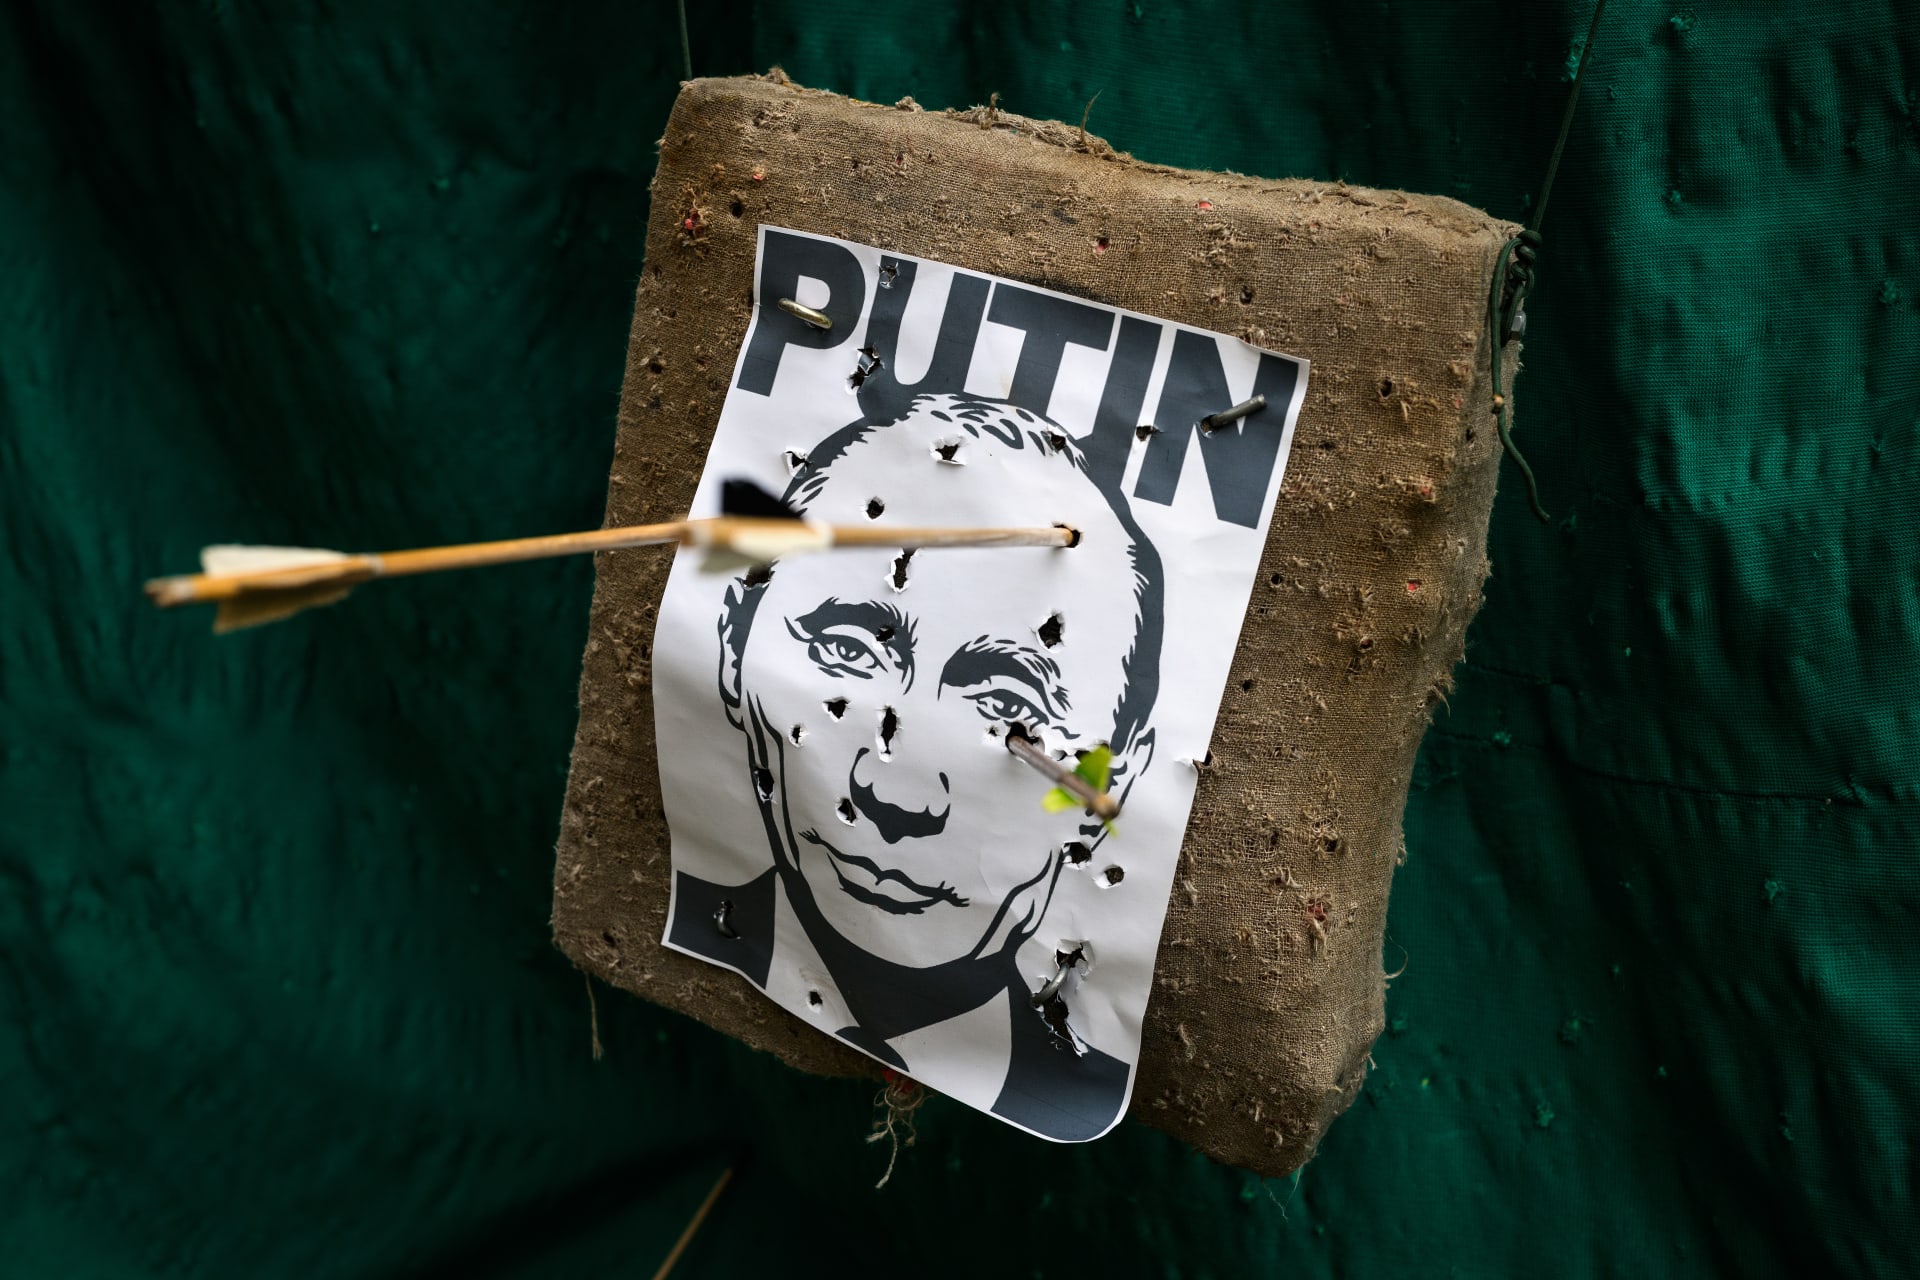 Nová turistická atrakce ve lvovském muzeu: Obrázek Vladimira Putina jako terč pro šípy